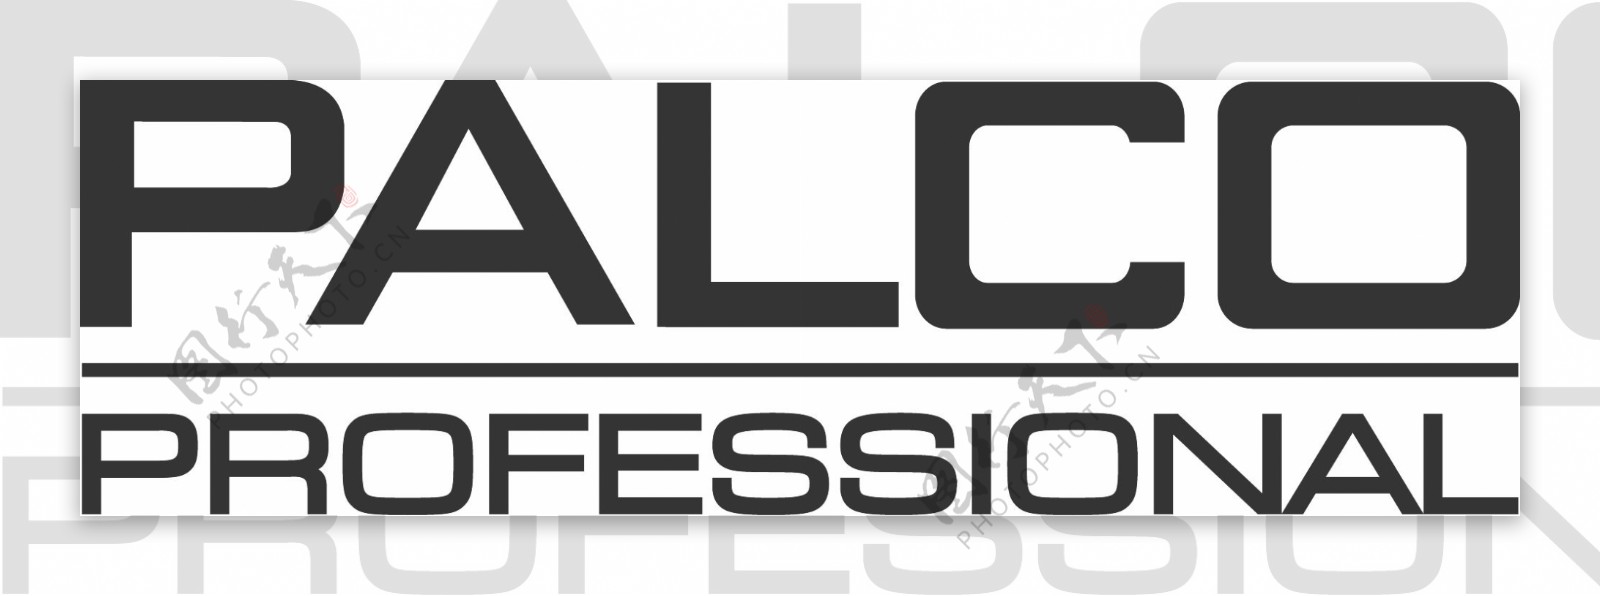 Palcologo设计欣赏Palco洗护品标志下载标志设计欣赏